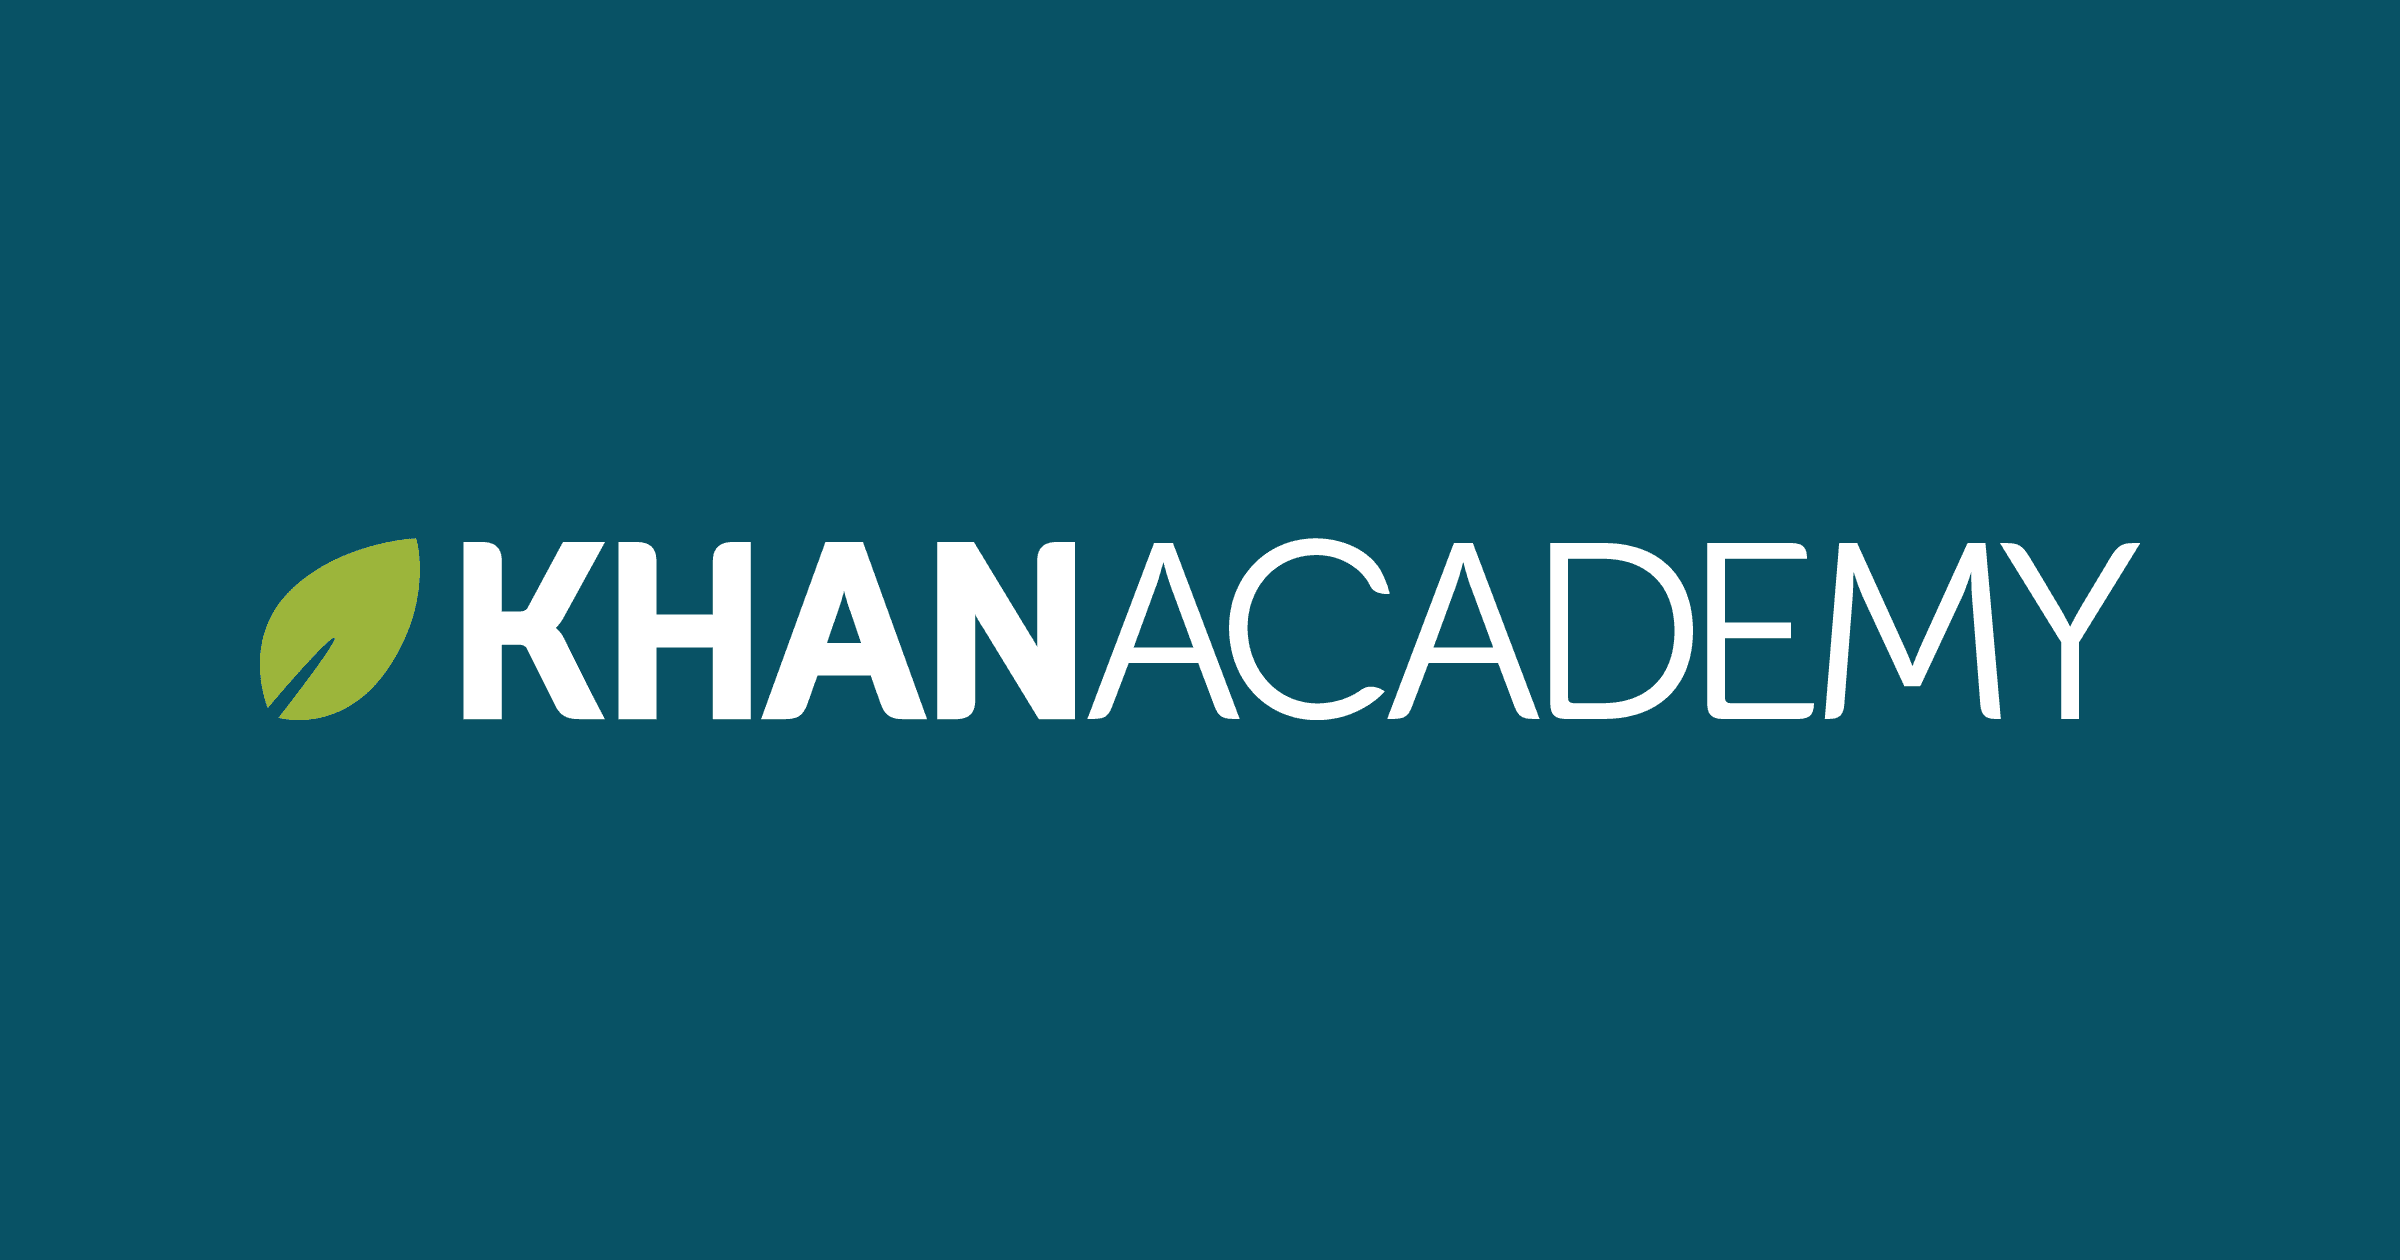 លទ្ធផល​រូបភាព​សម្រាប់ khan academy